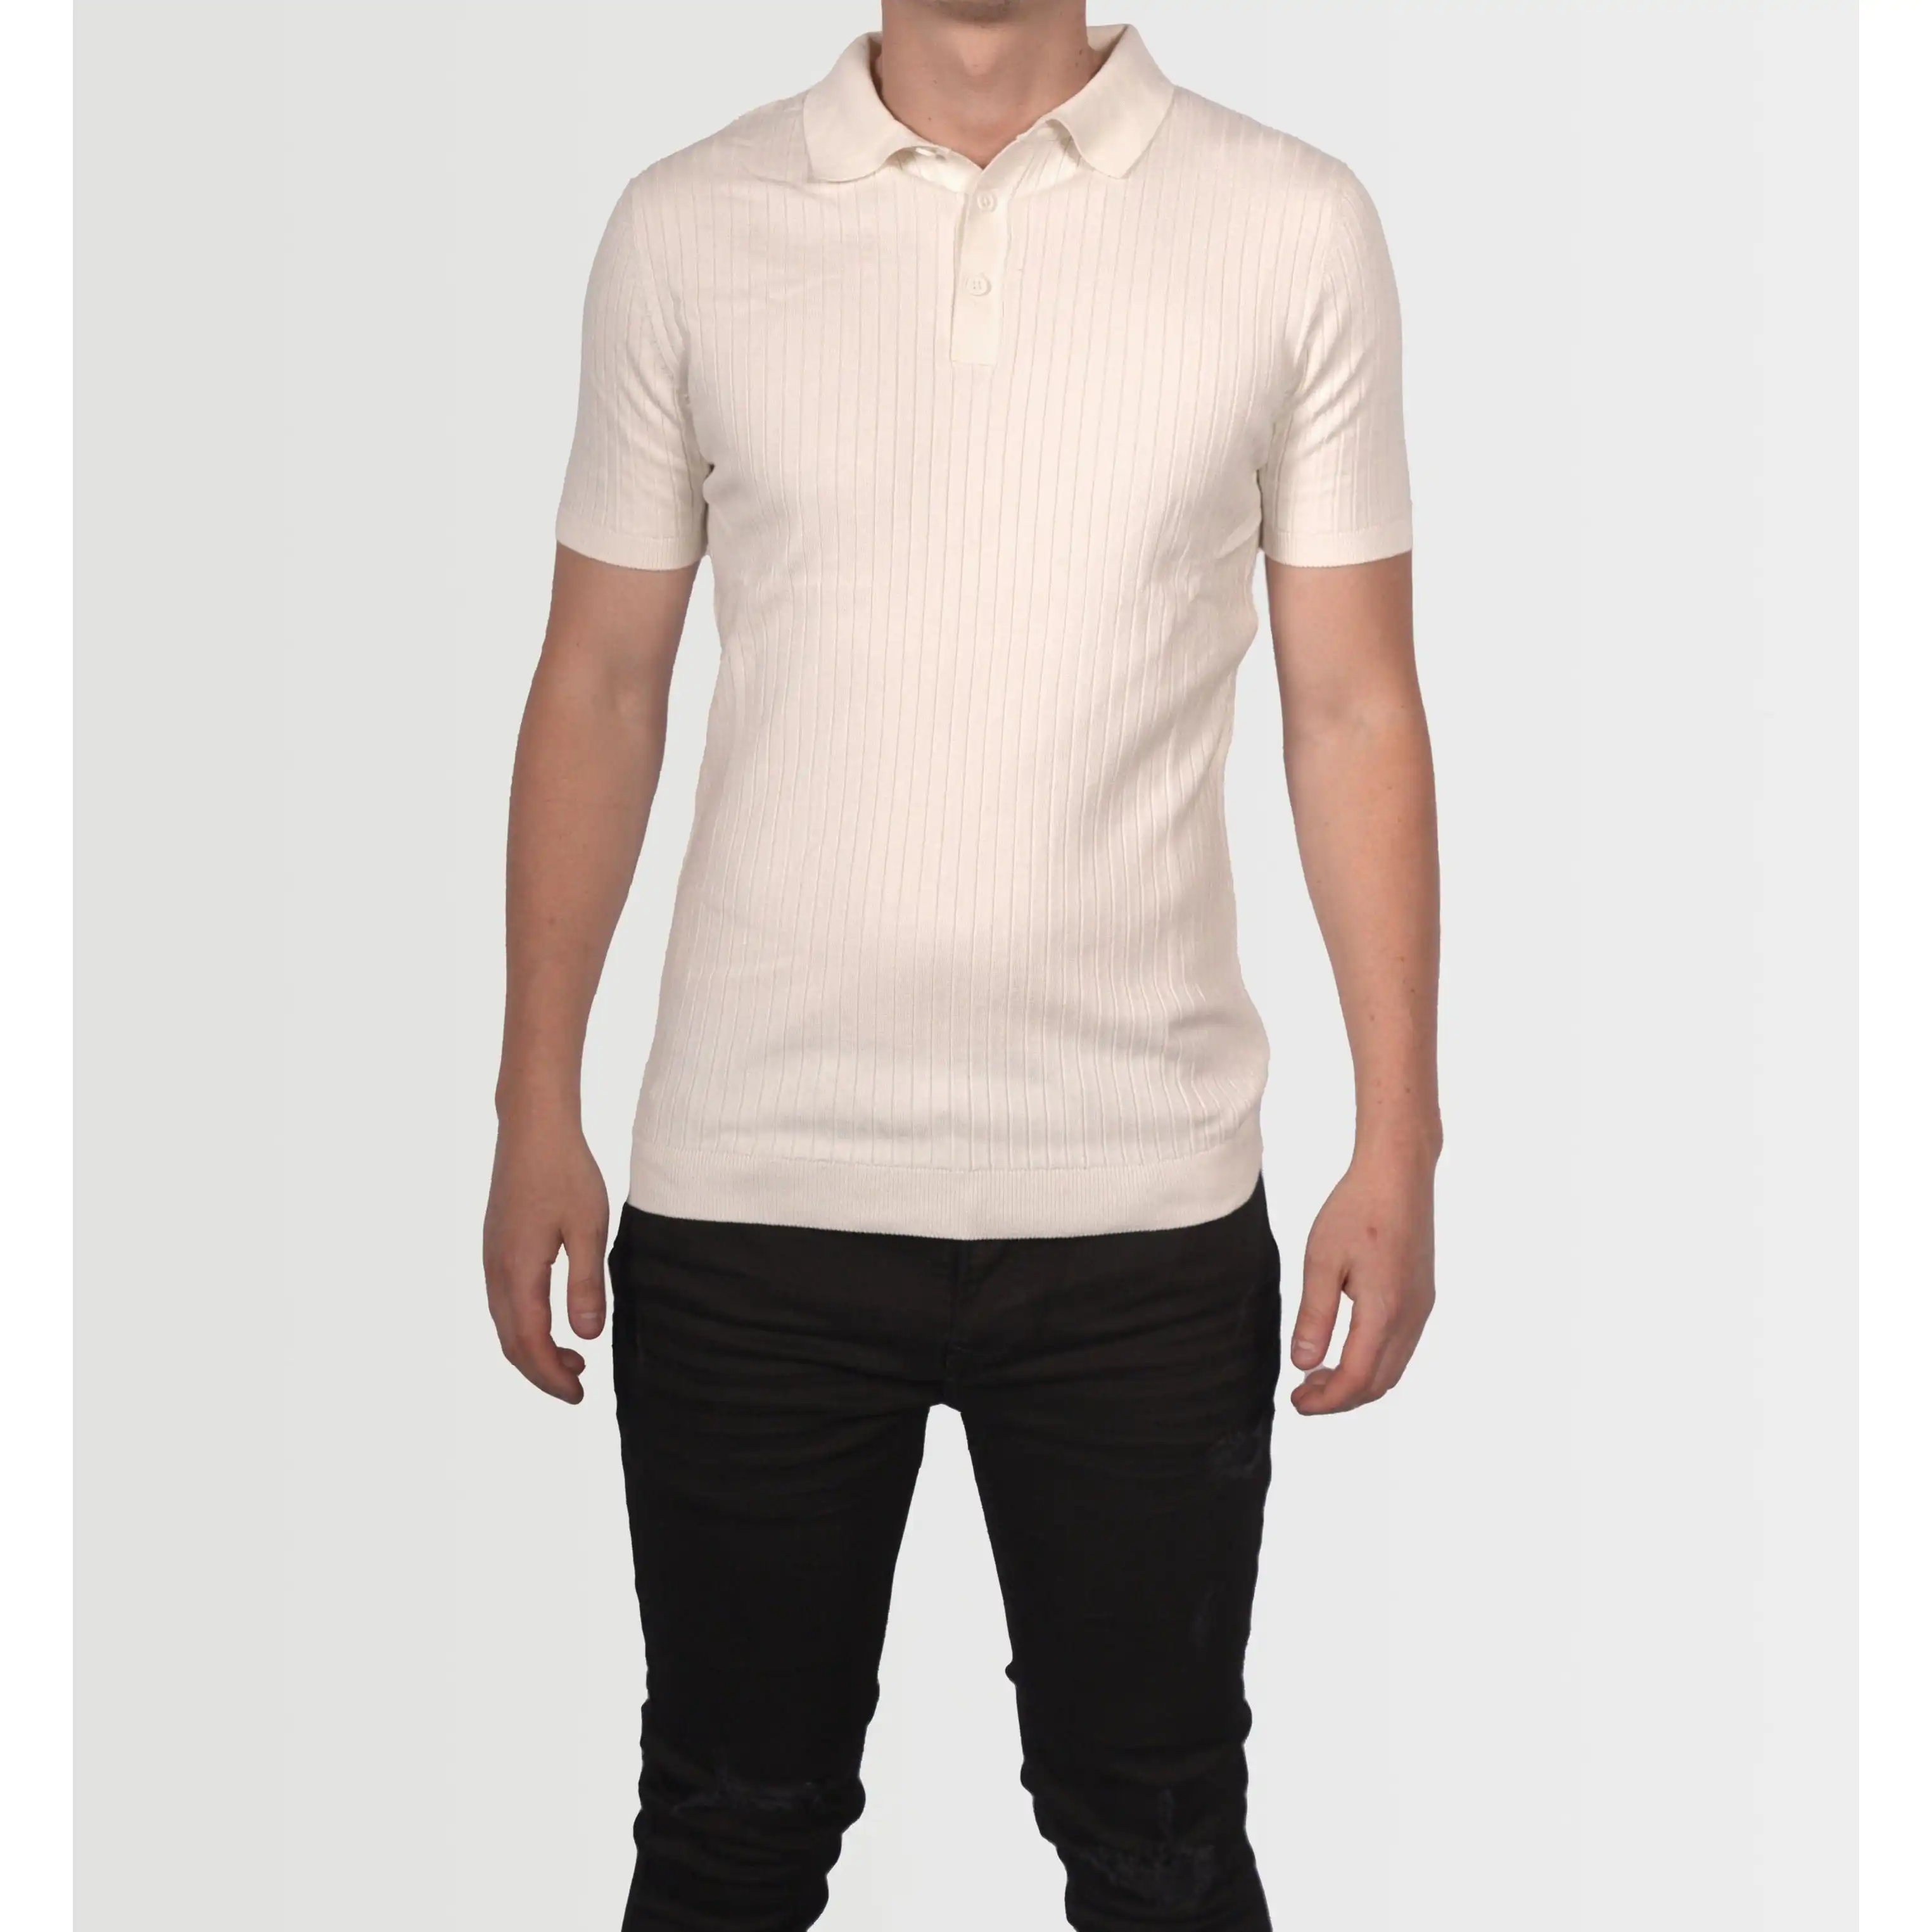 Topman Men's White Short Sleeve Knit Shirt